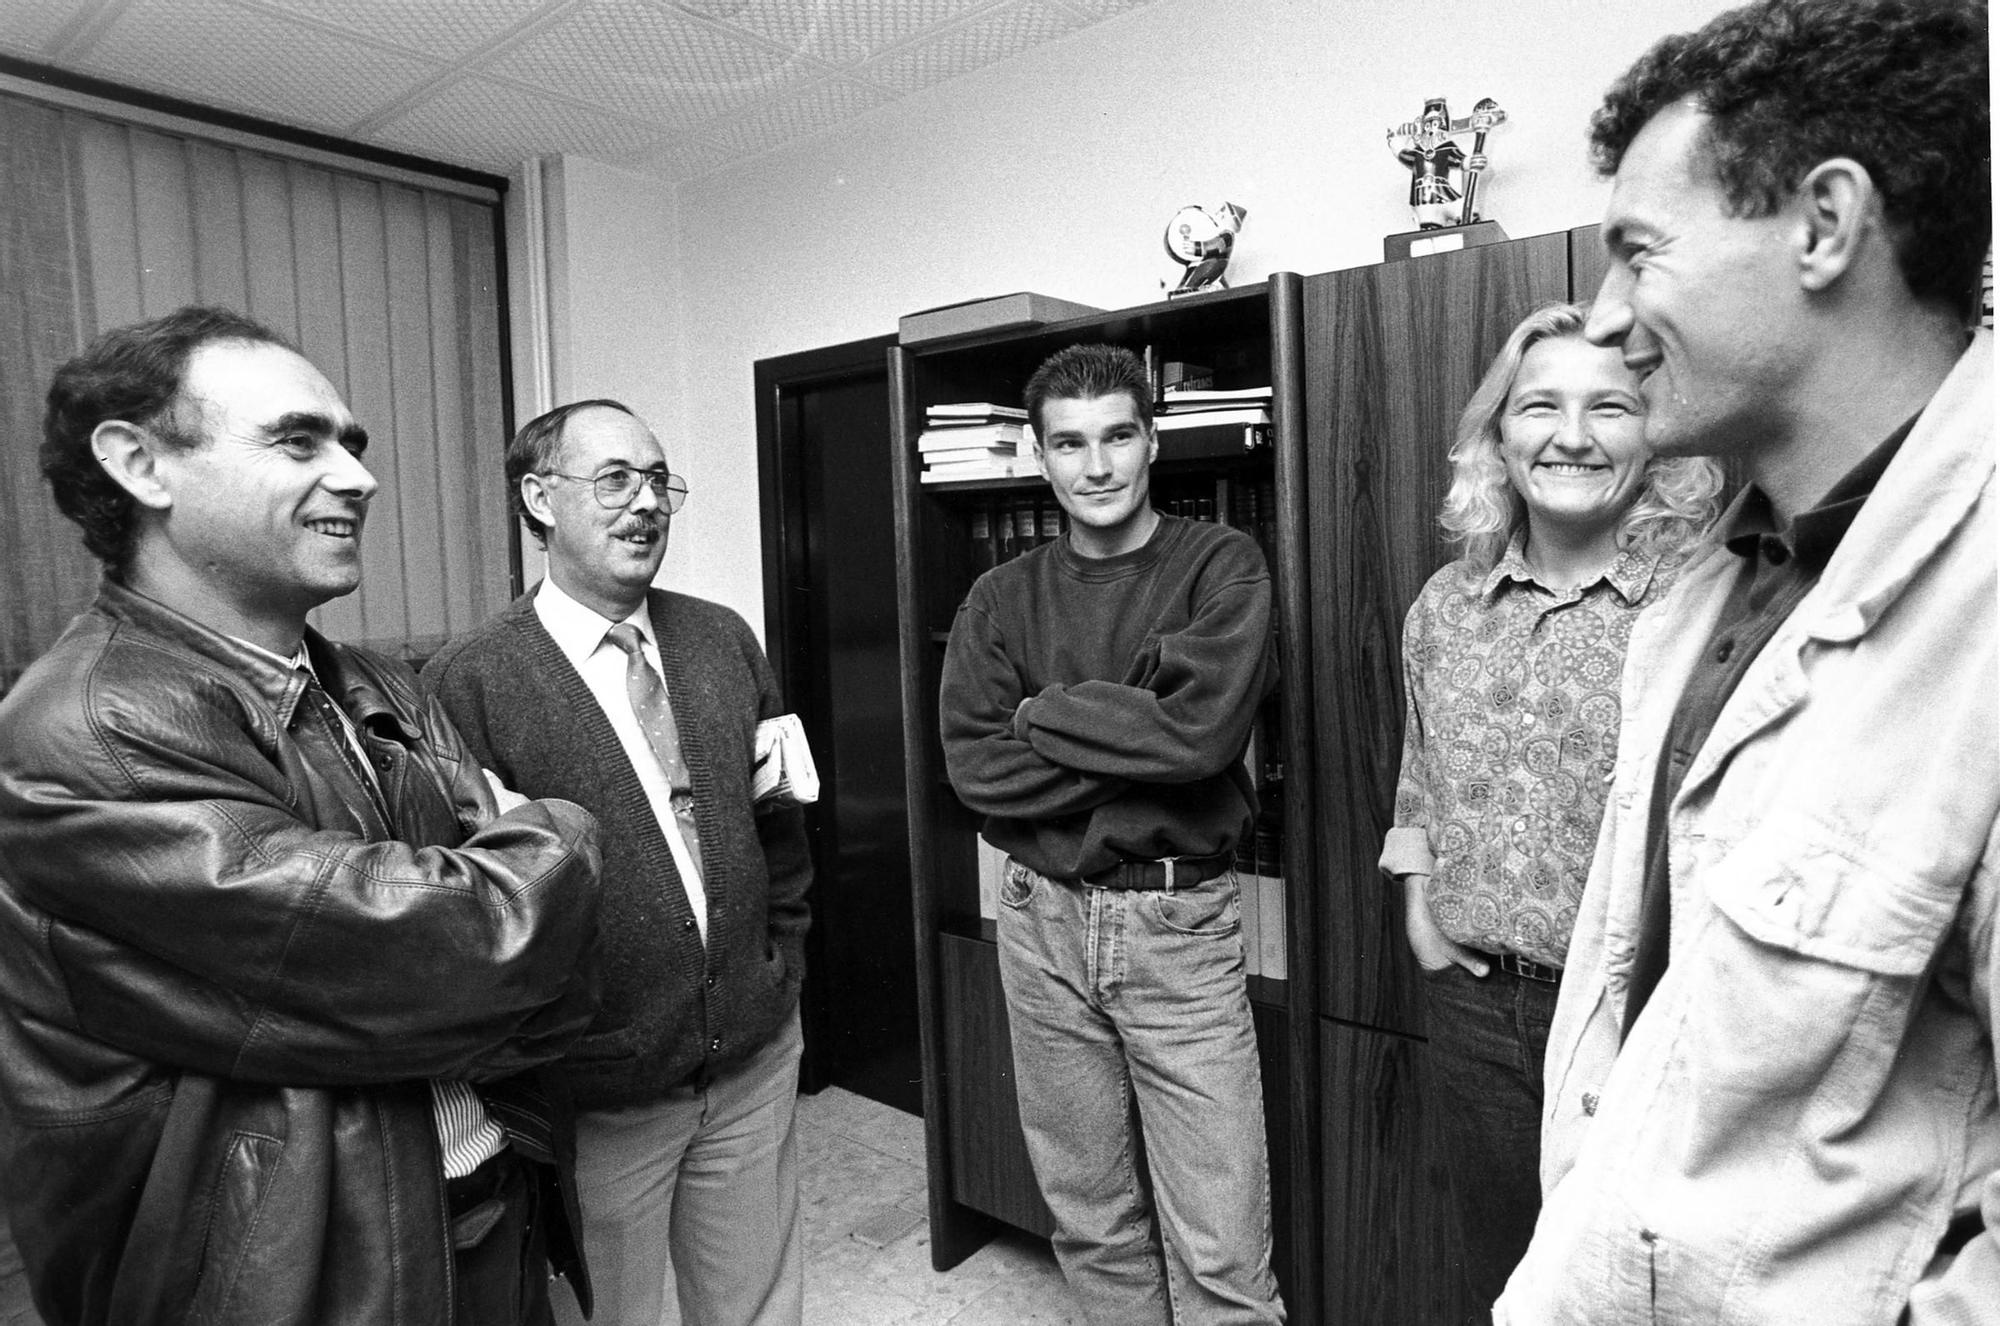 Los jugadores Vlado Gudelj y Goran Maric en la redacción de Faro de Vigo junto a Fernando Gallego y Ceferino de Blas en 1991 Cameselle.jpg